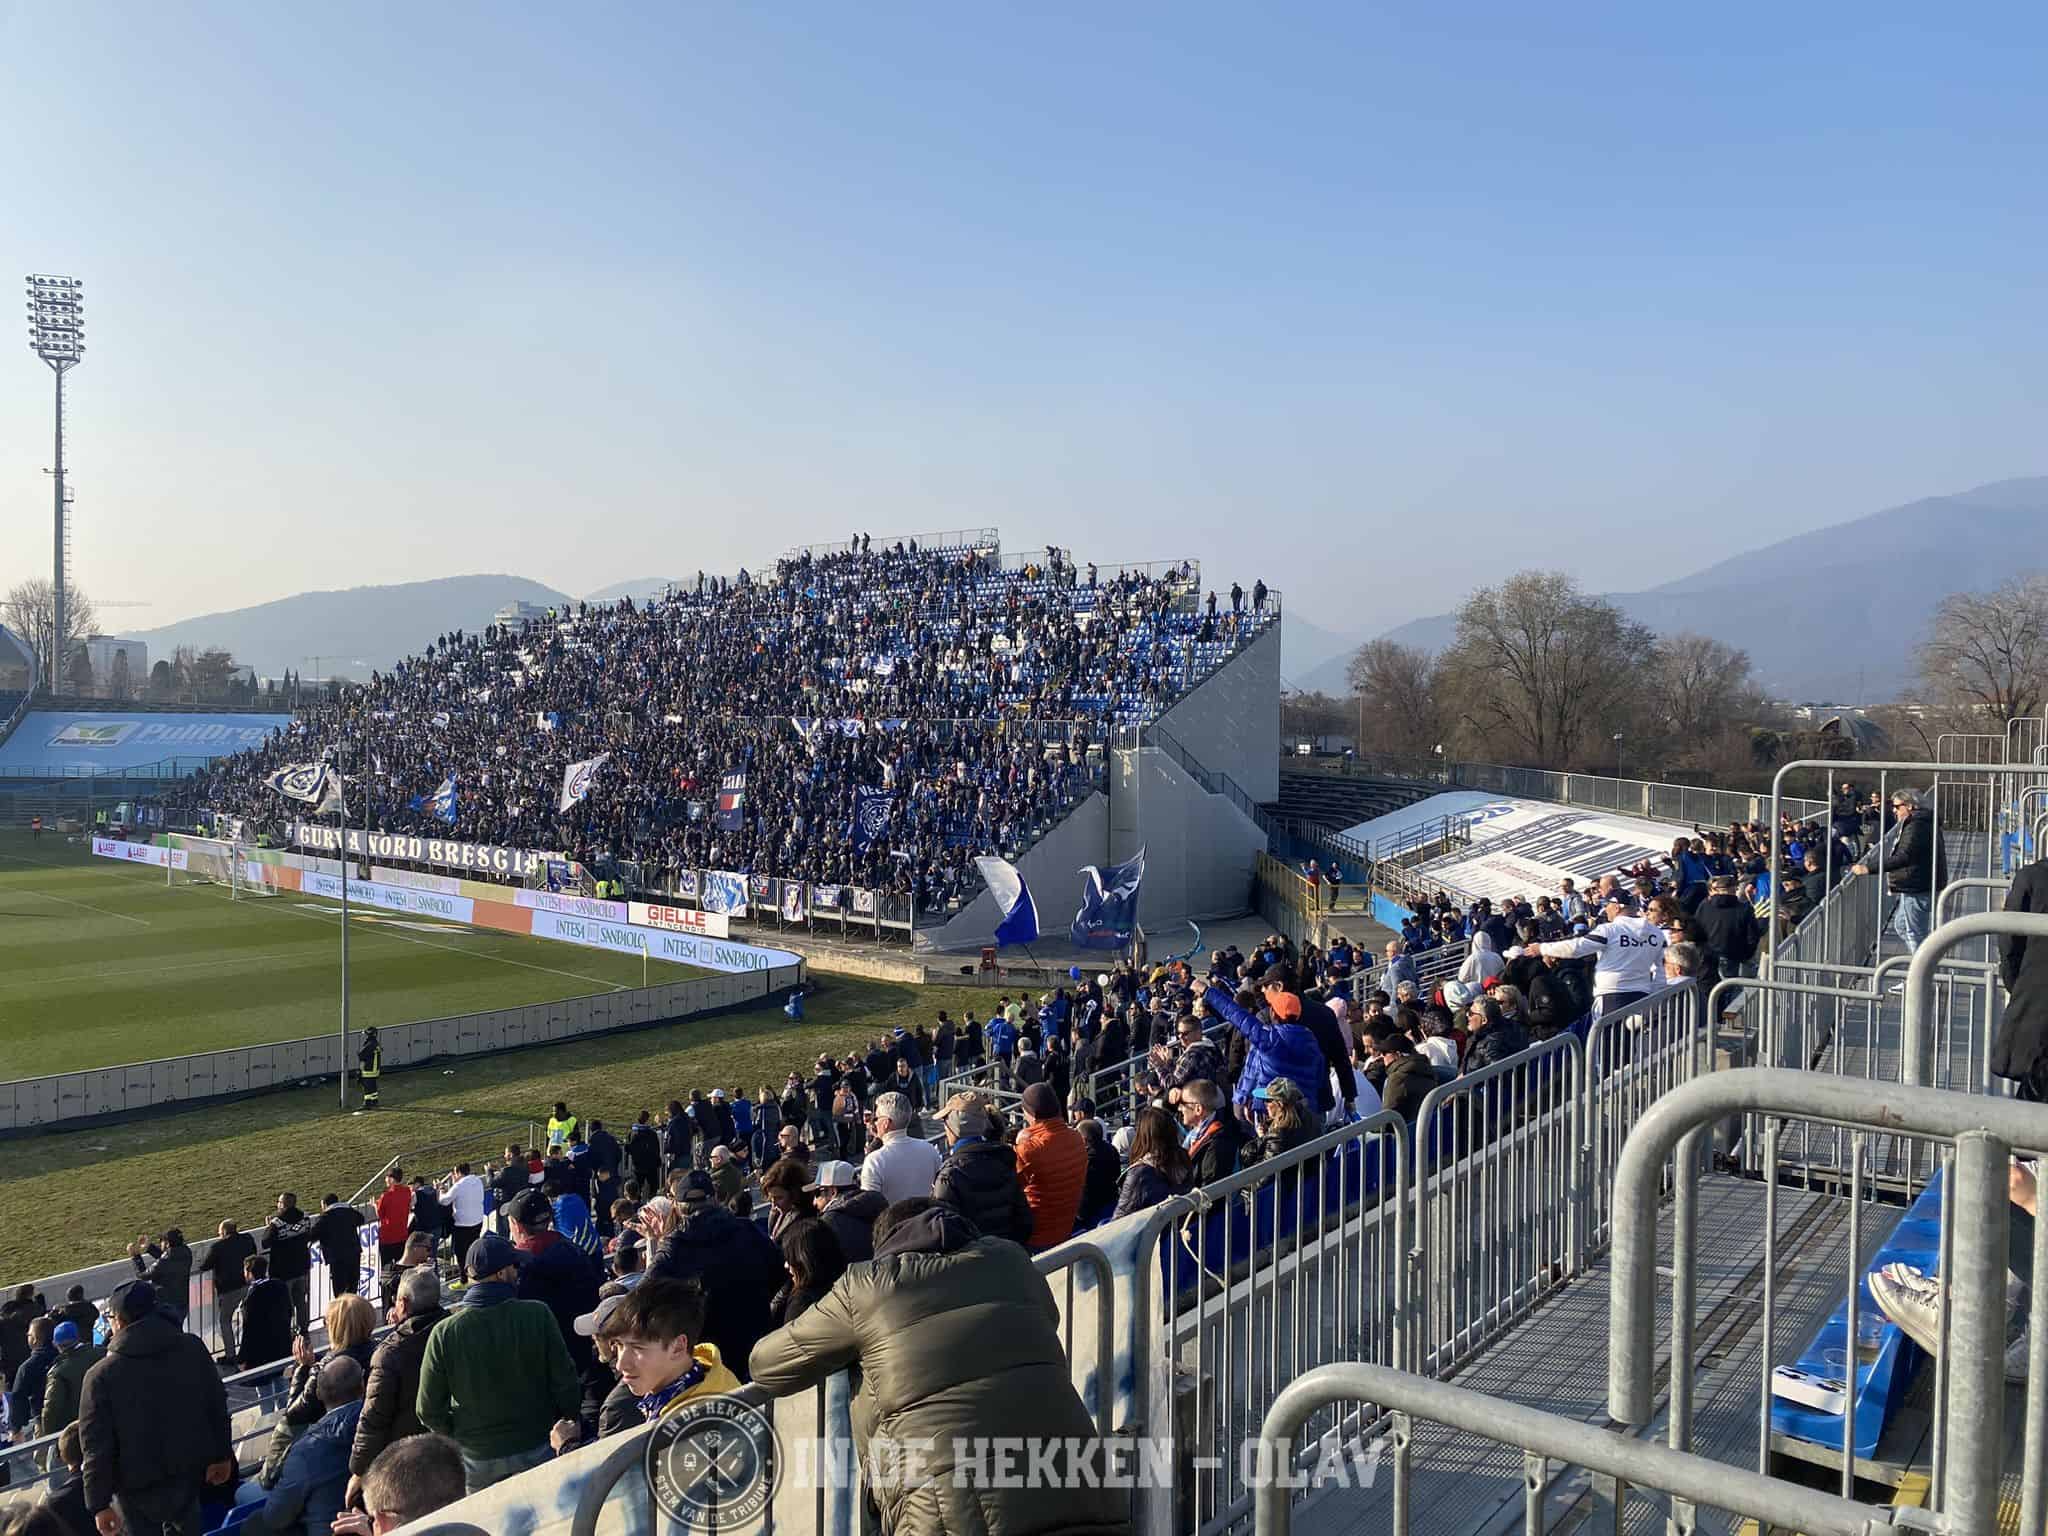 Uno stadio costruito nello stadio: Brescia In di Hekken